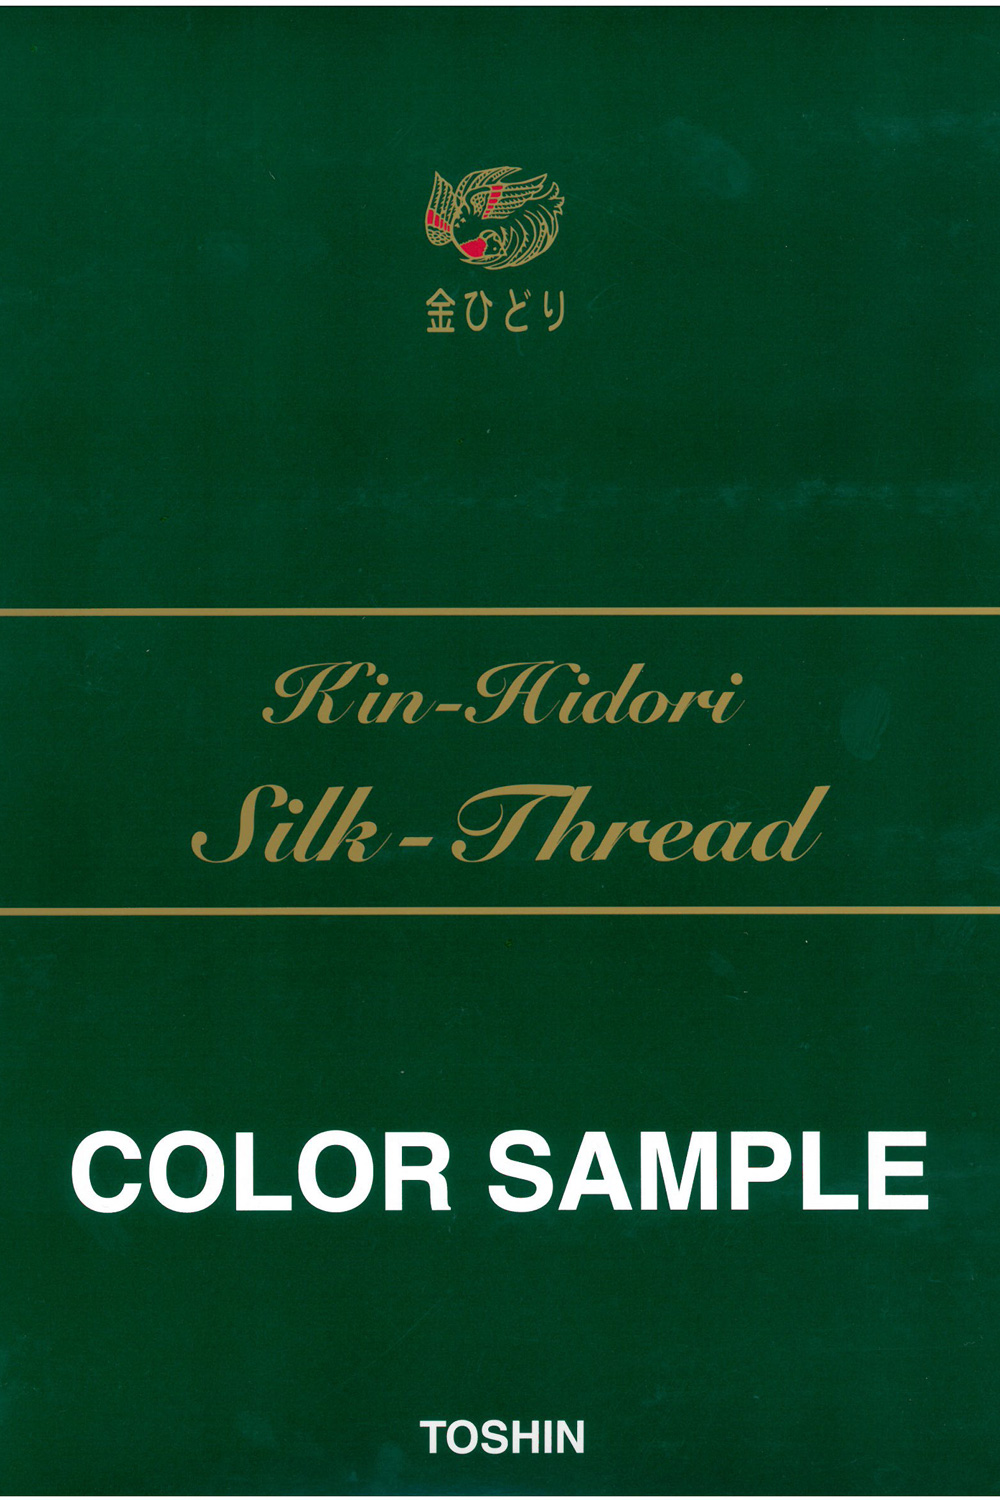 金ひどり 絹まつり(地縫) Kin-Hidori絲綢手工縫紉線 東神